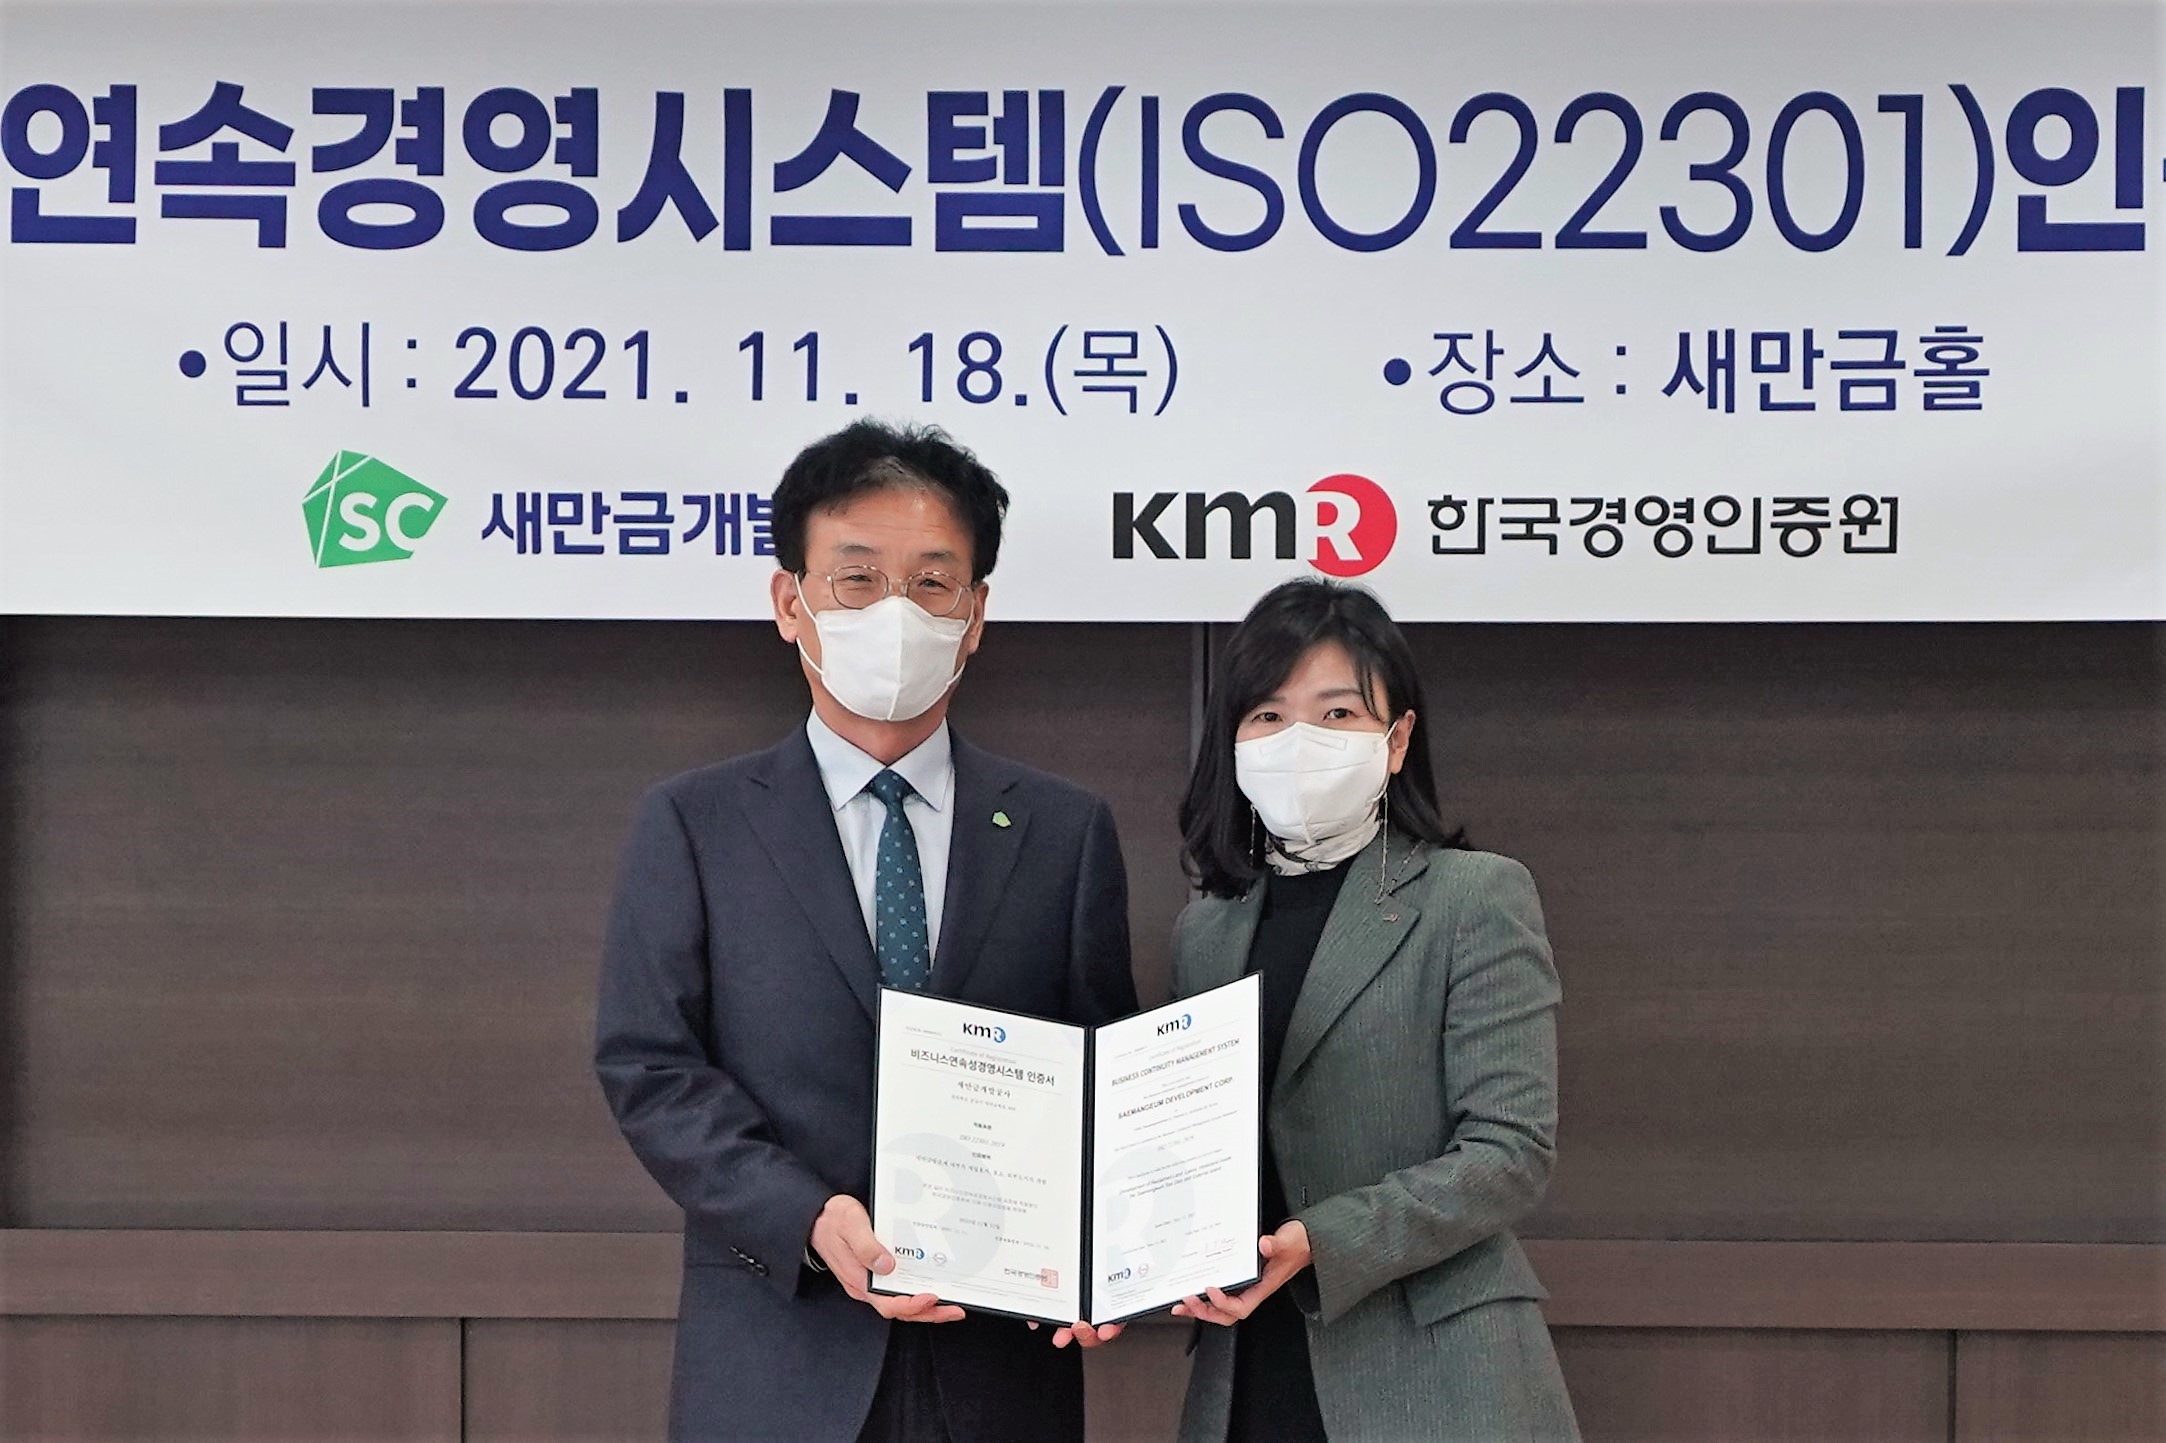 セマングム開発公社、ビジネス連続経営システム(ISO22301)取得 - 韓国経営認証院のファン・ウンジュ代表取締役(右)がセマングム開発公社のカン・ビョンジェ社長(左)に認証書を手渡している。.jpg